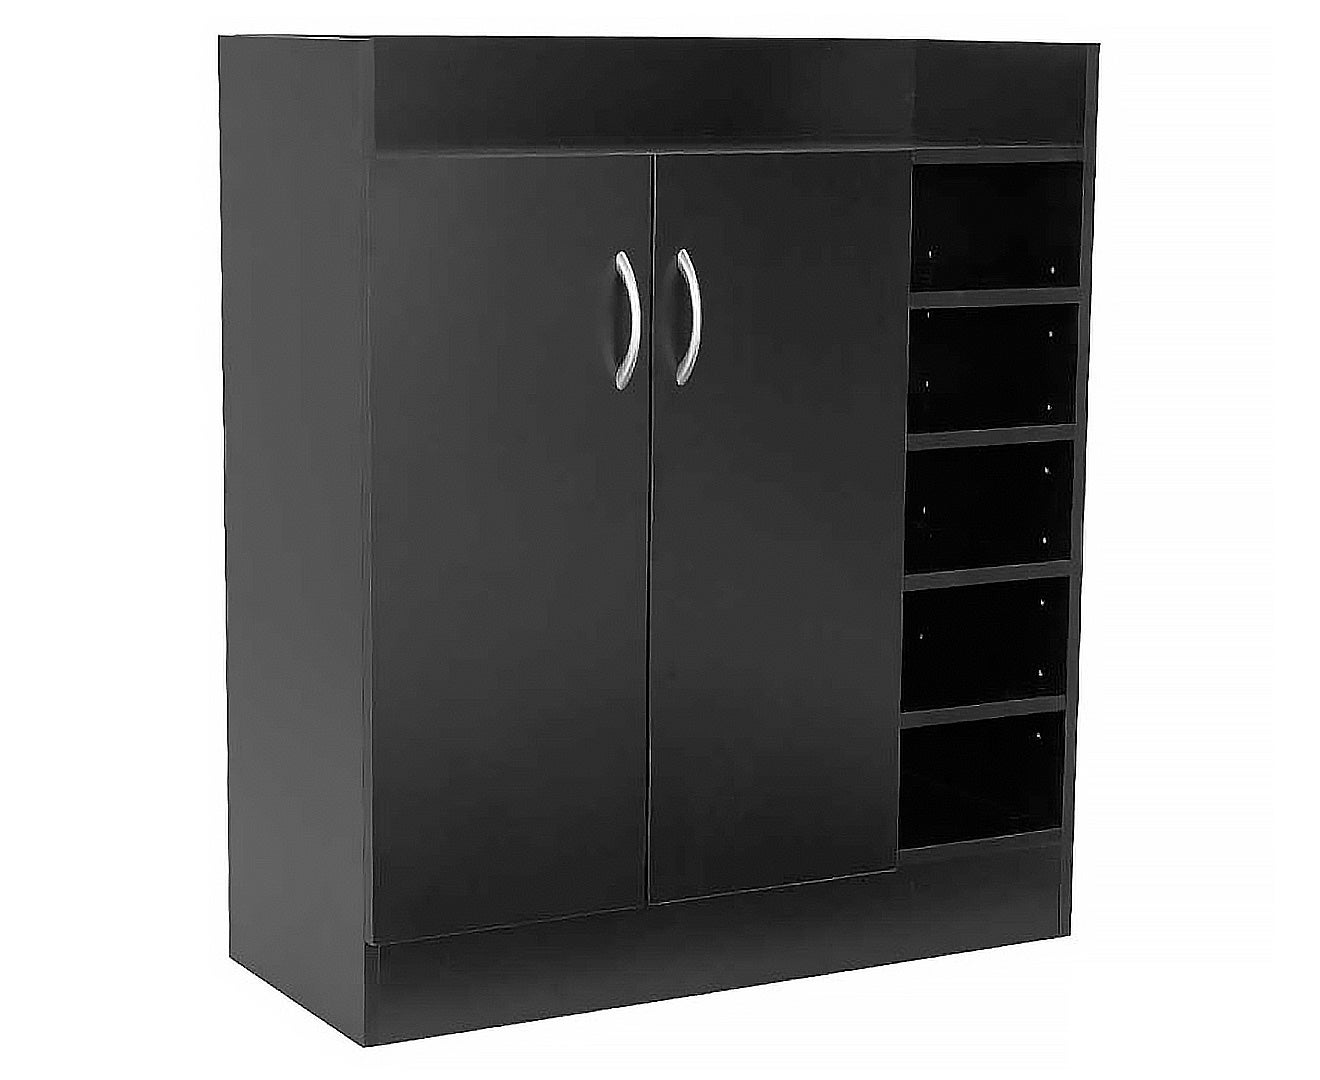 21 Pairs Shoe Cabinet Rack Storage Organiser Shelf 2 Doors Cupboard Black